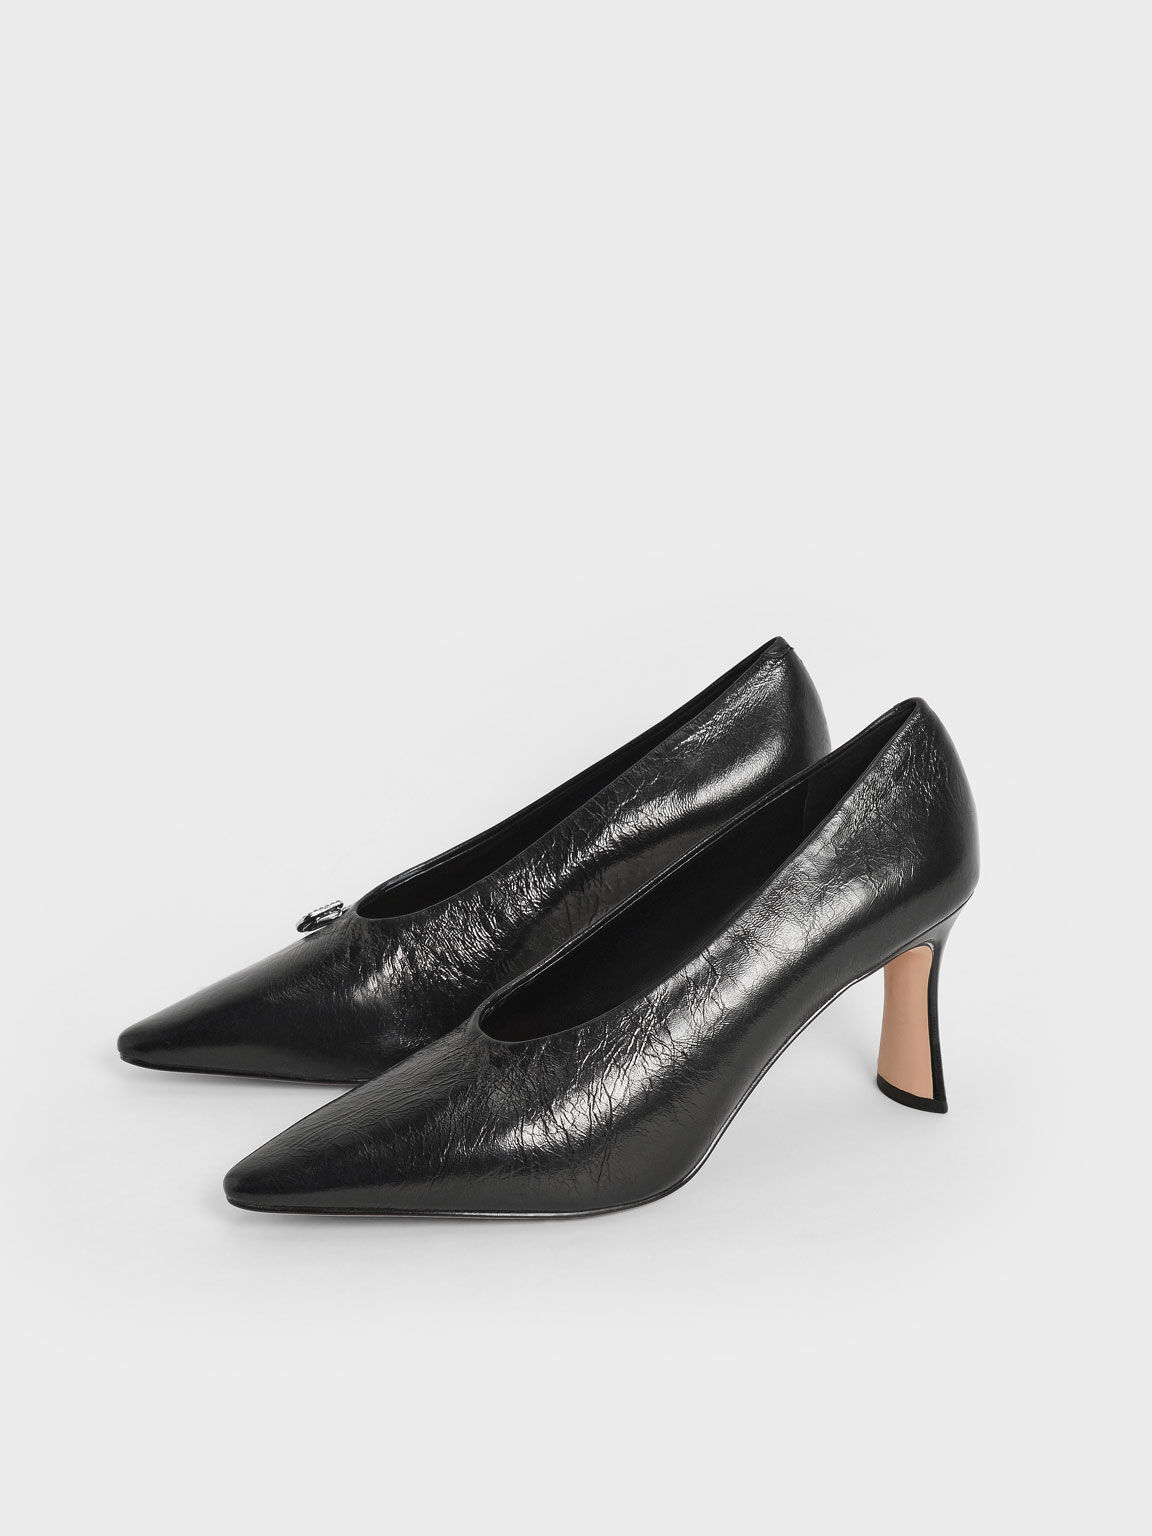 Gem-Embellished Leather Court Shoes, Black, hi-res